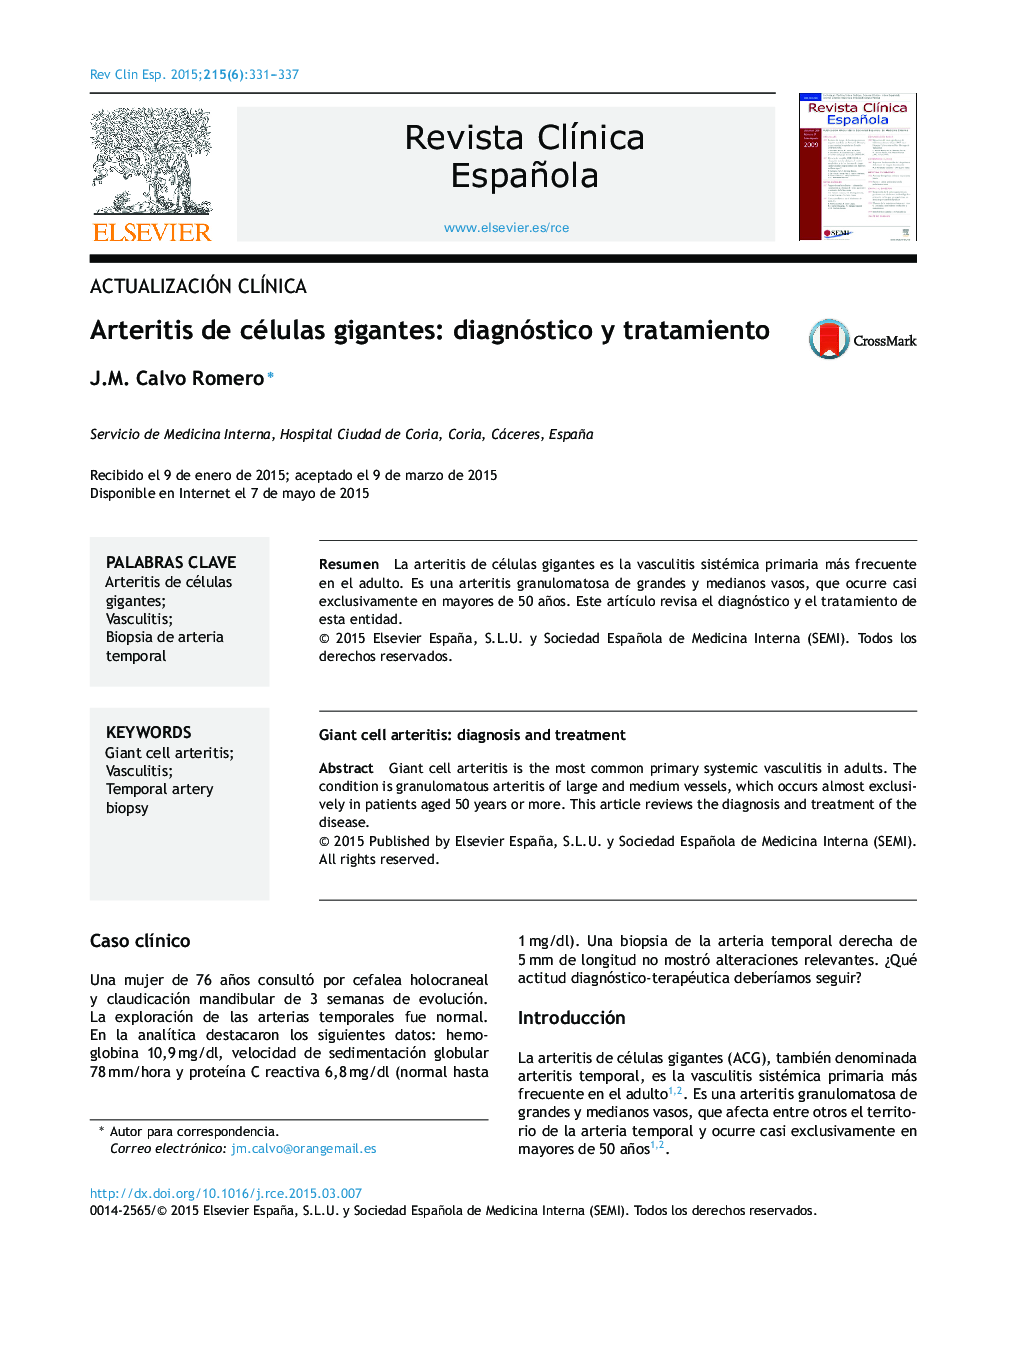 Arteritis de células gigantes: diagnóstico y tratamiento